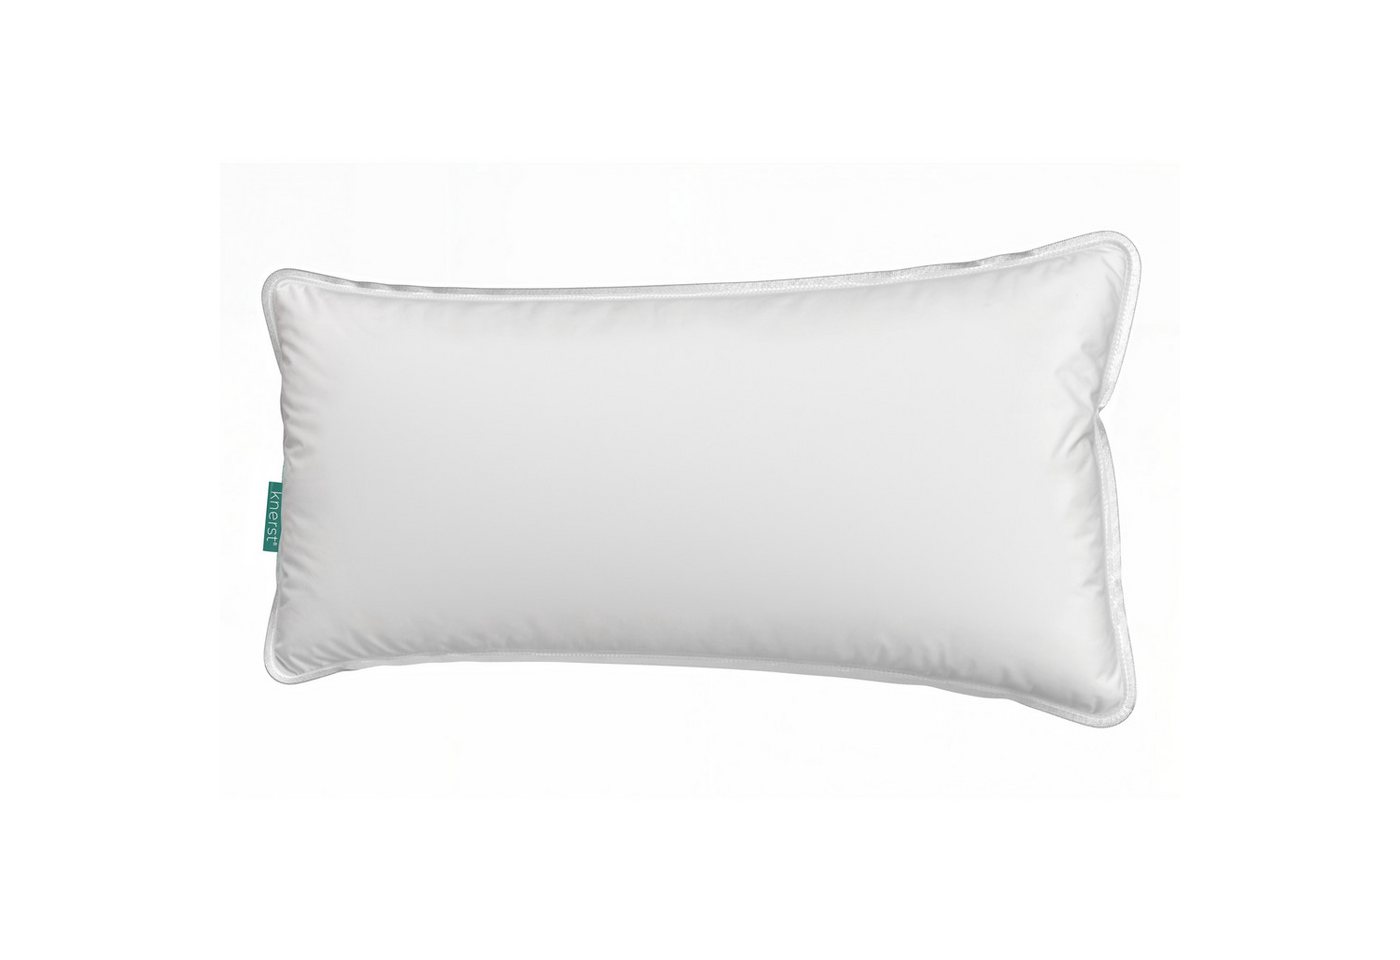 Kopfkissen, KNERST, Füllung: NanoCloudFill Technologie – 100% Polyester, ergonomisches Schlafkissen ideal für jede Schlafposition, Kissen mit eleganter, weißer Biese von KNERST